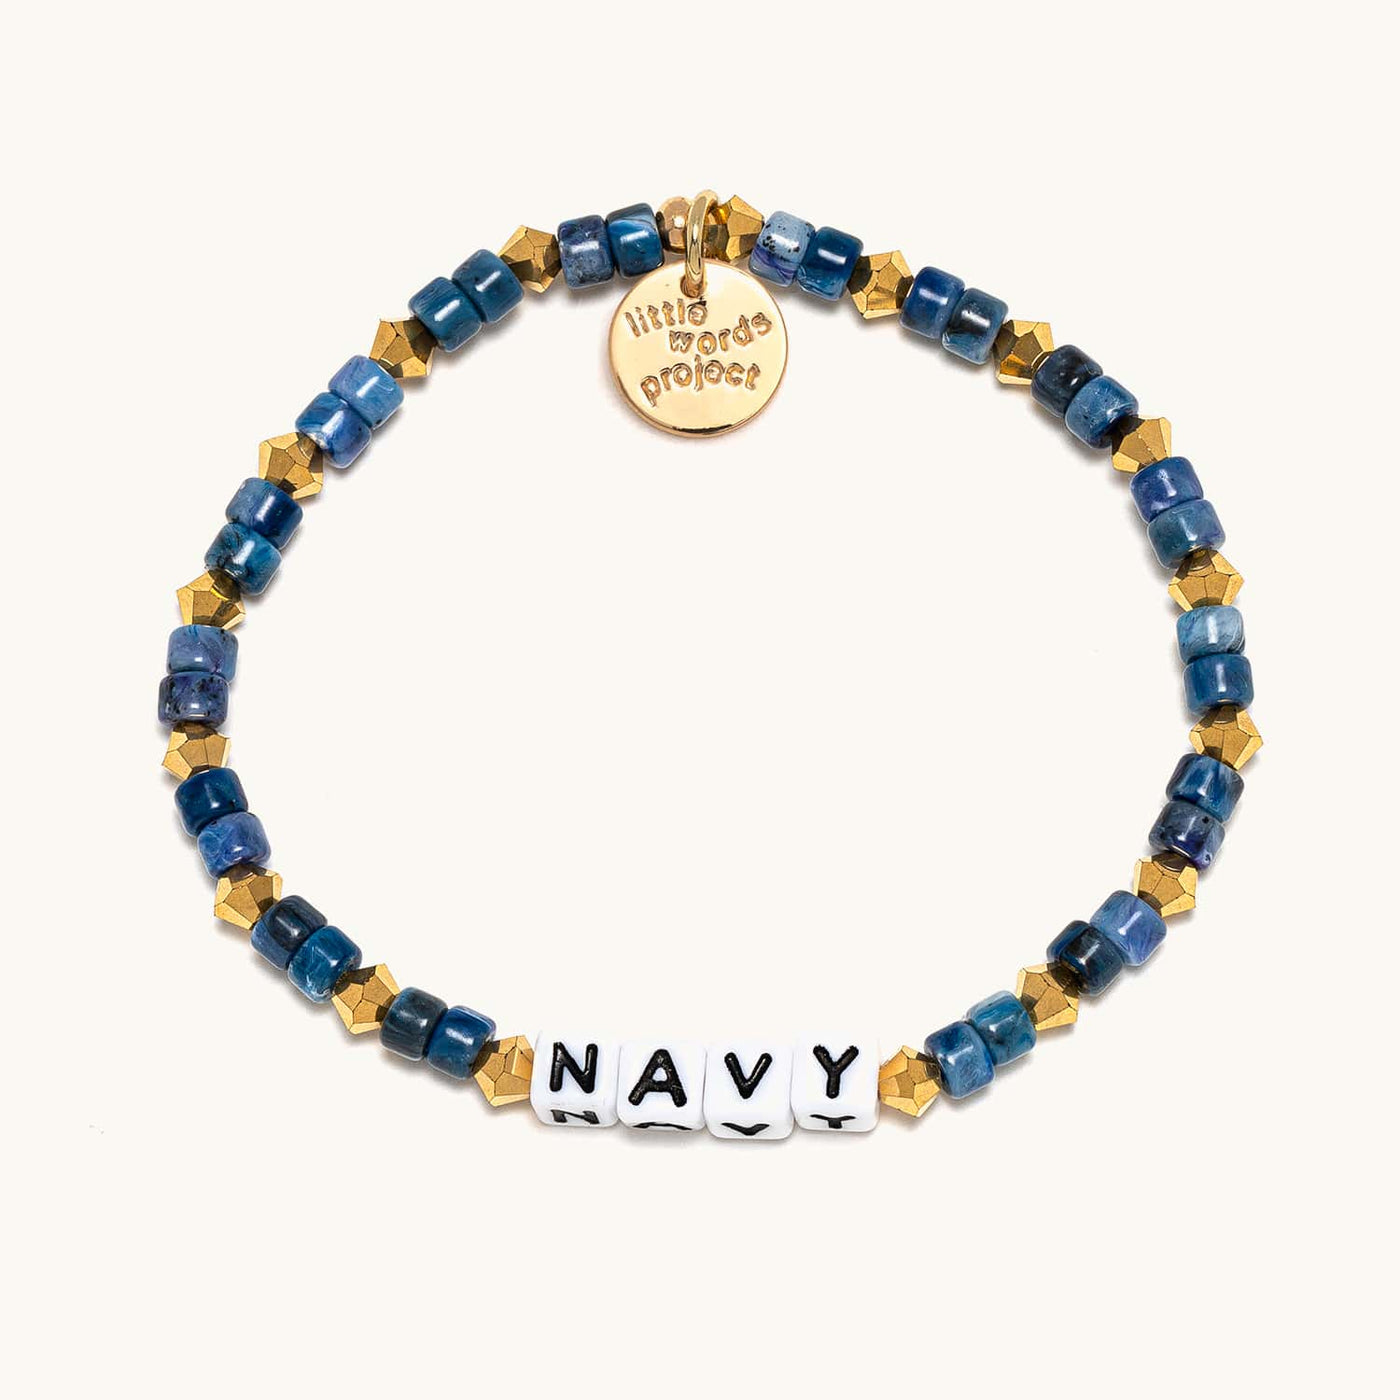 'Navy' Beaded Bracelet | Little Words Project